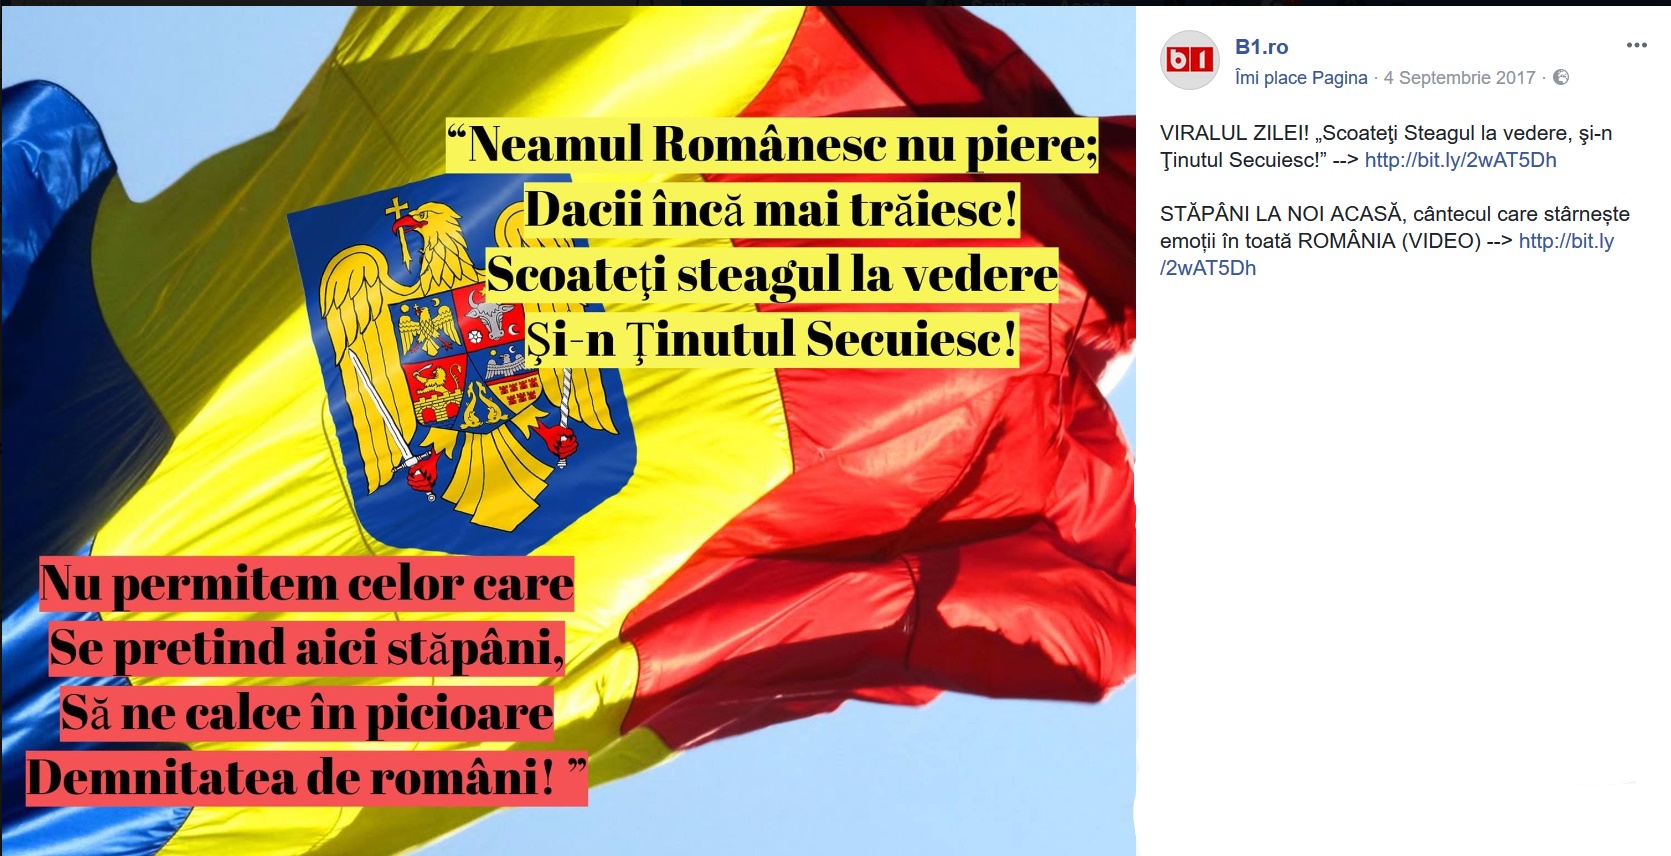 B1 promovează cântecul “Stăpâni la noi acasă” și postează o imagine cu steagul României și versuri din cântec.